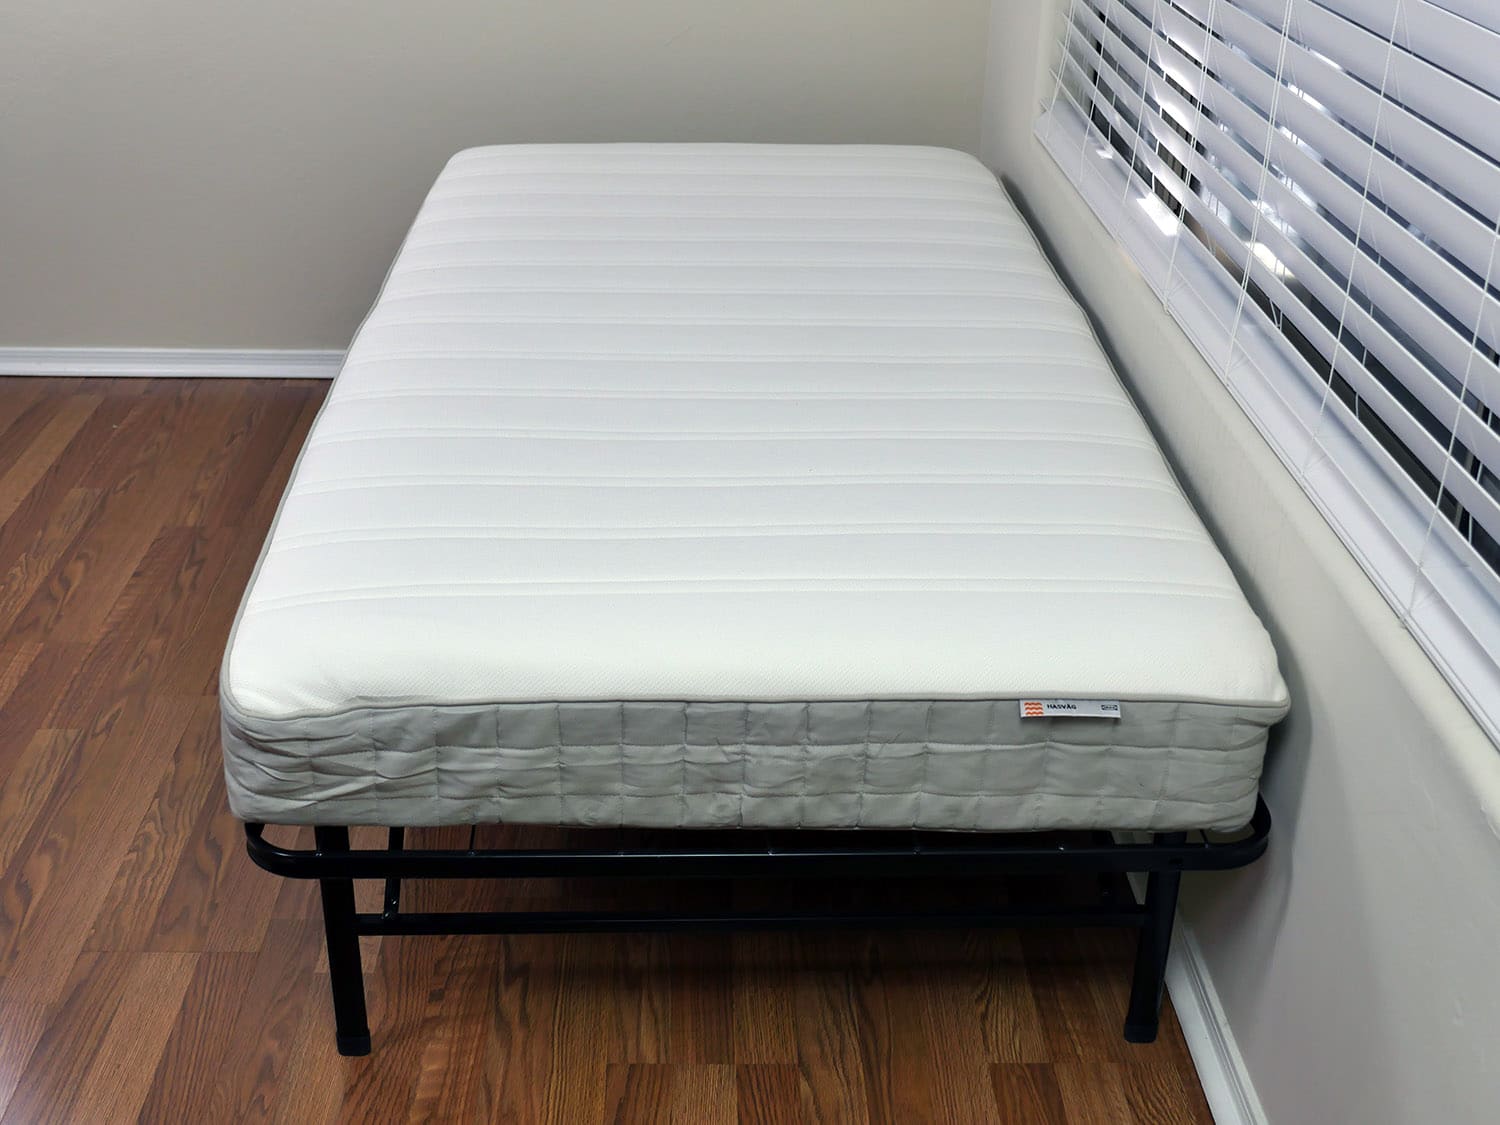 mattresses at ikea reviews